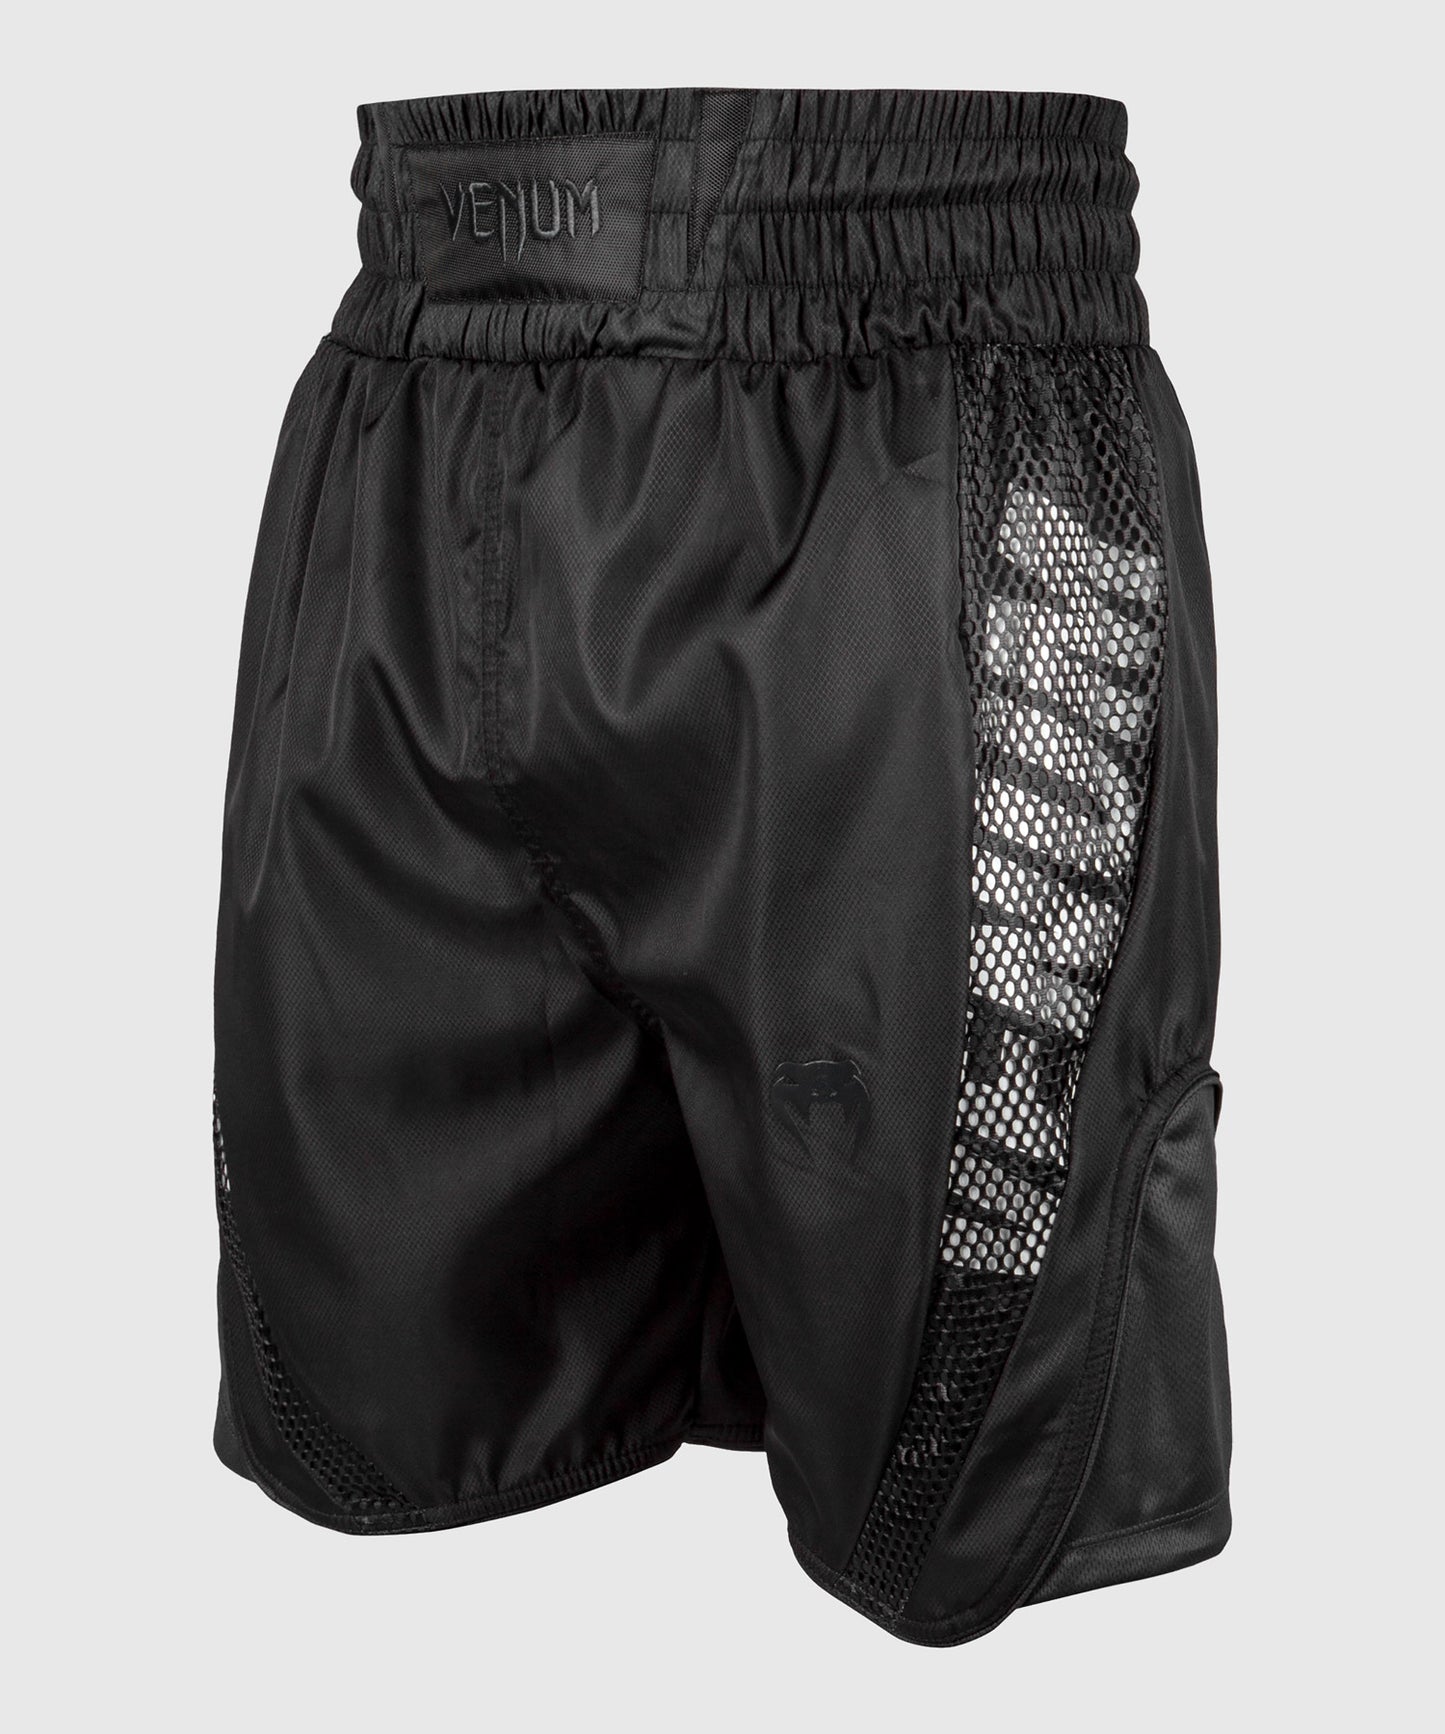 Venum Elite Boxing Shorts - Black/White S NEW Thailand Small